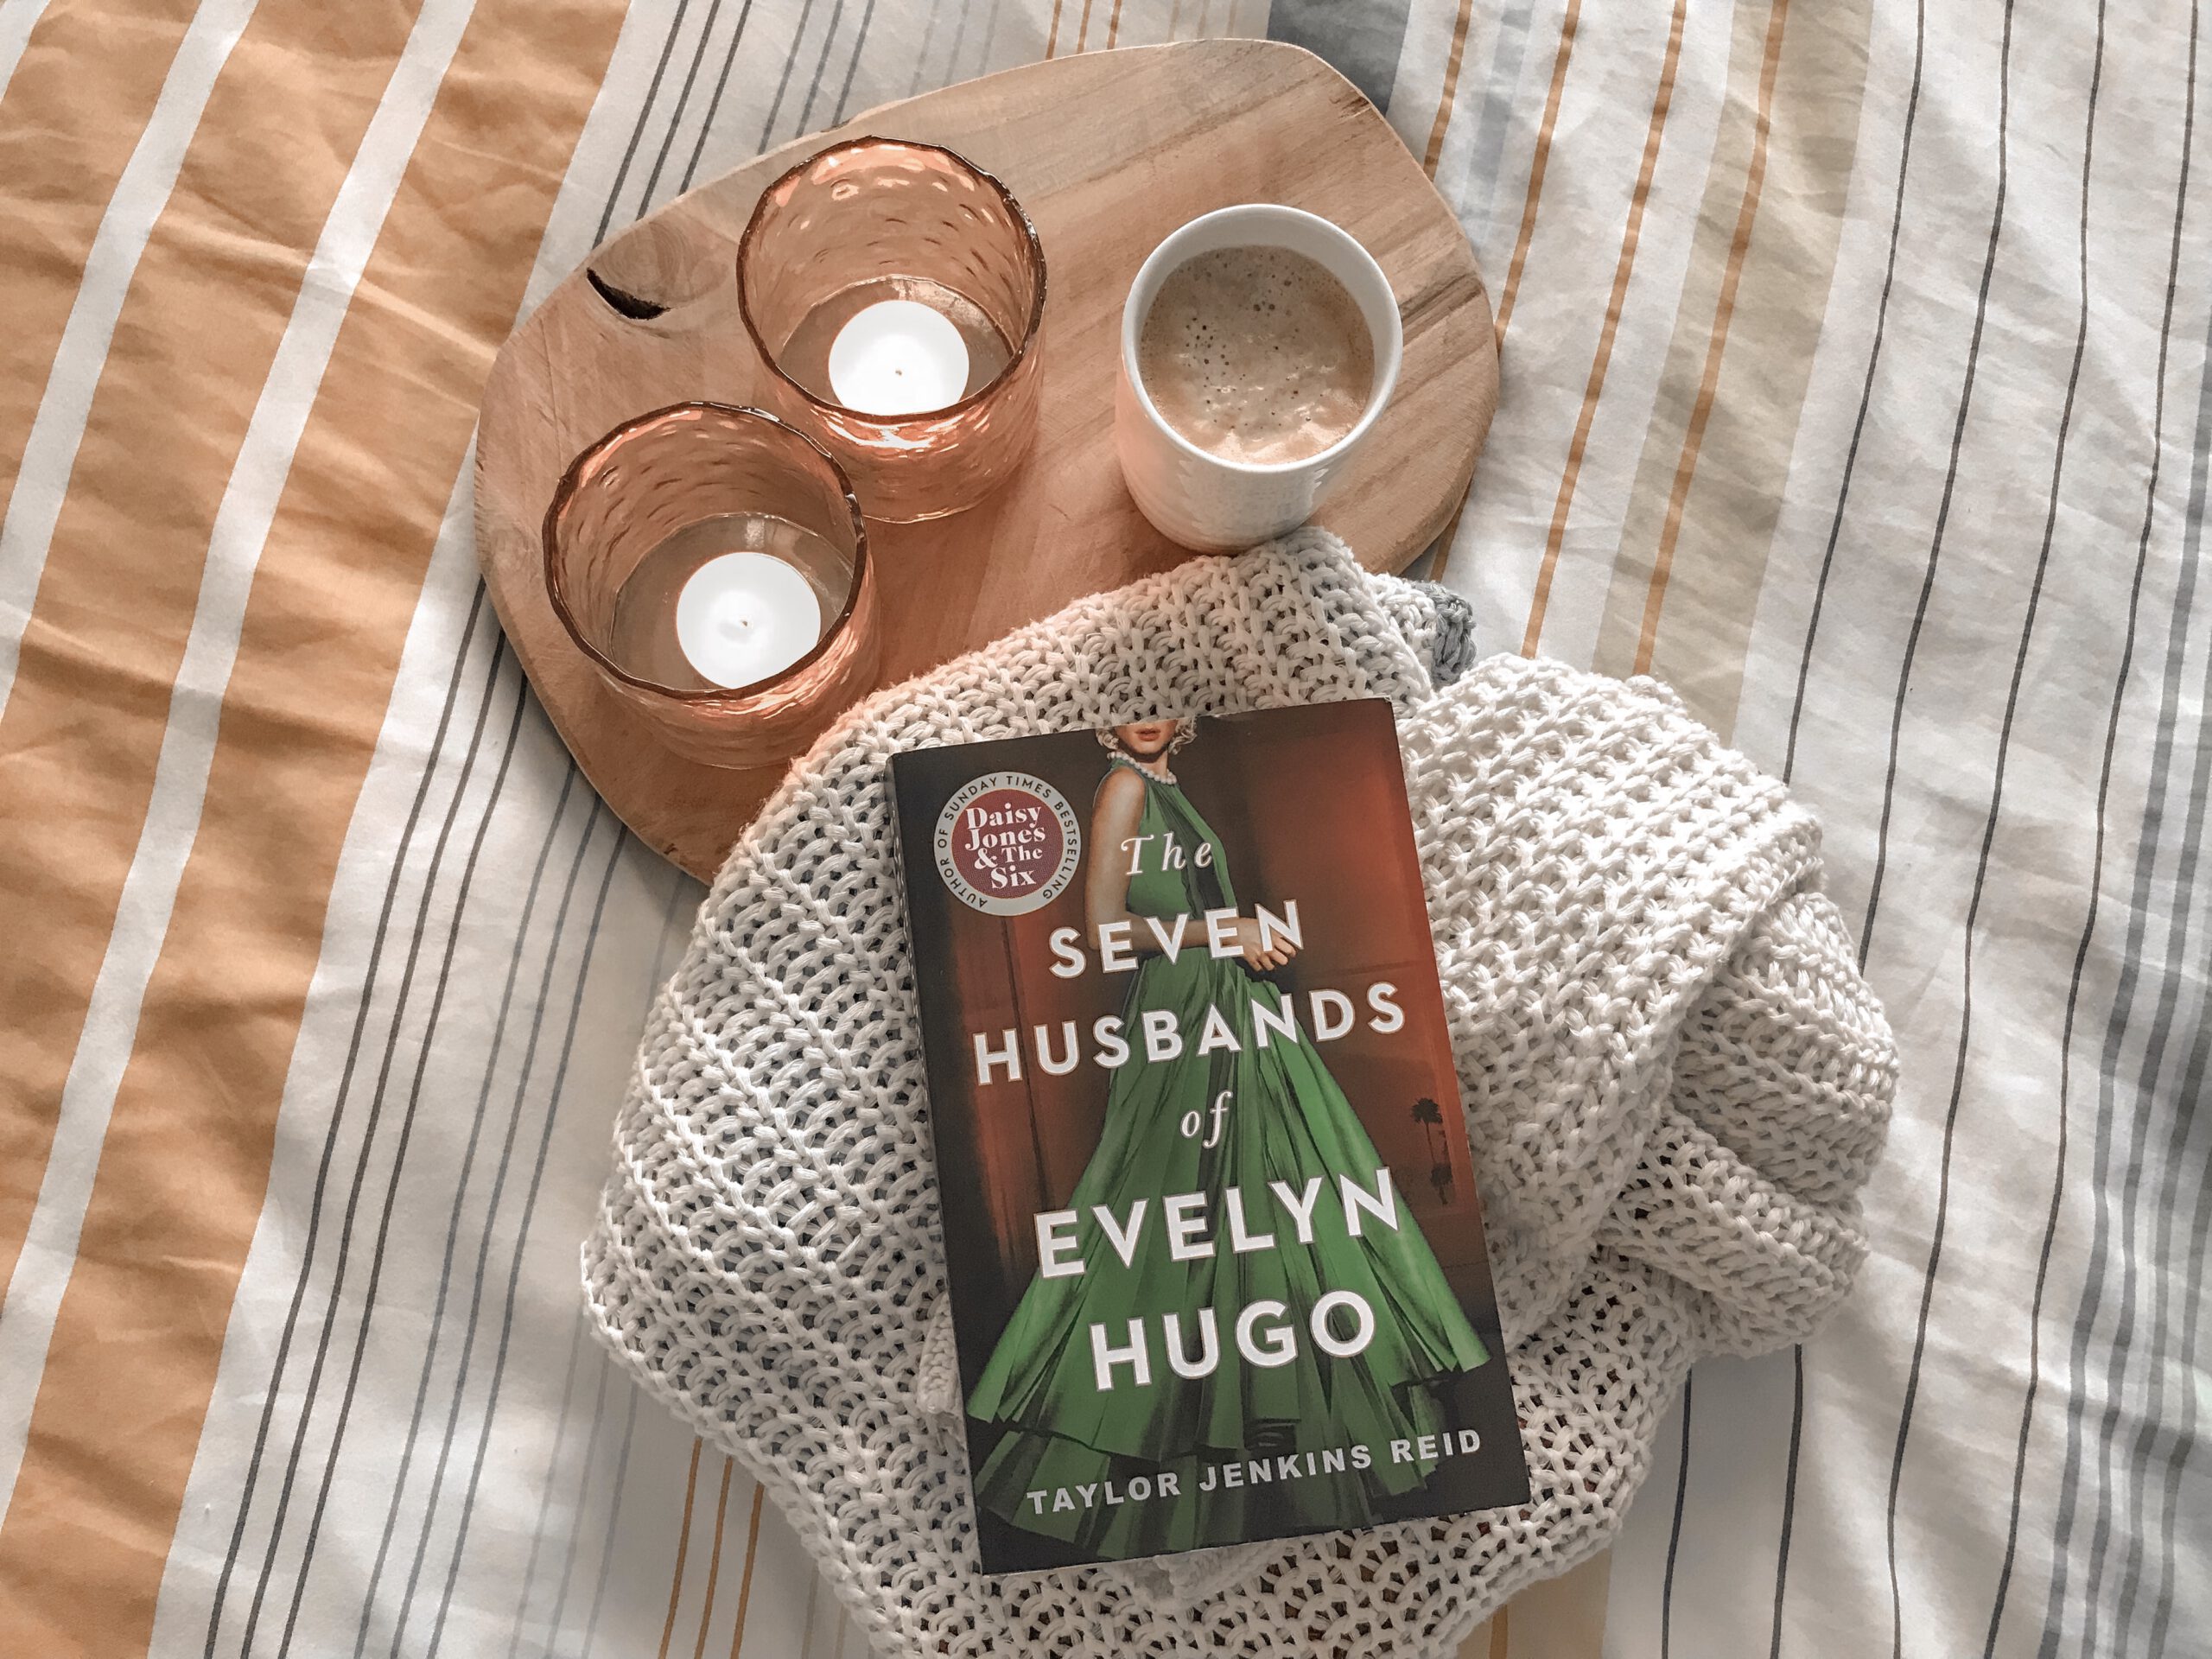 Review: The Seven Husbands of Evelyn Hugo – Taylor Jenkins Reid